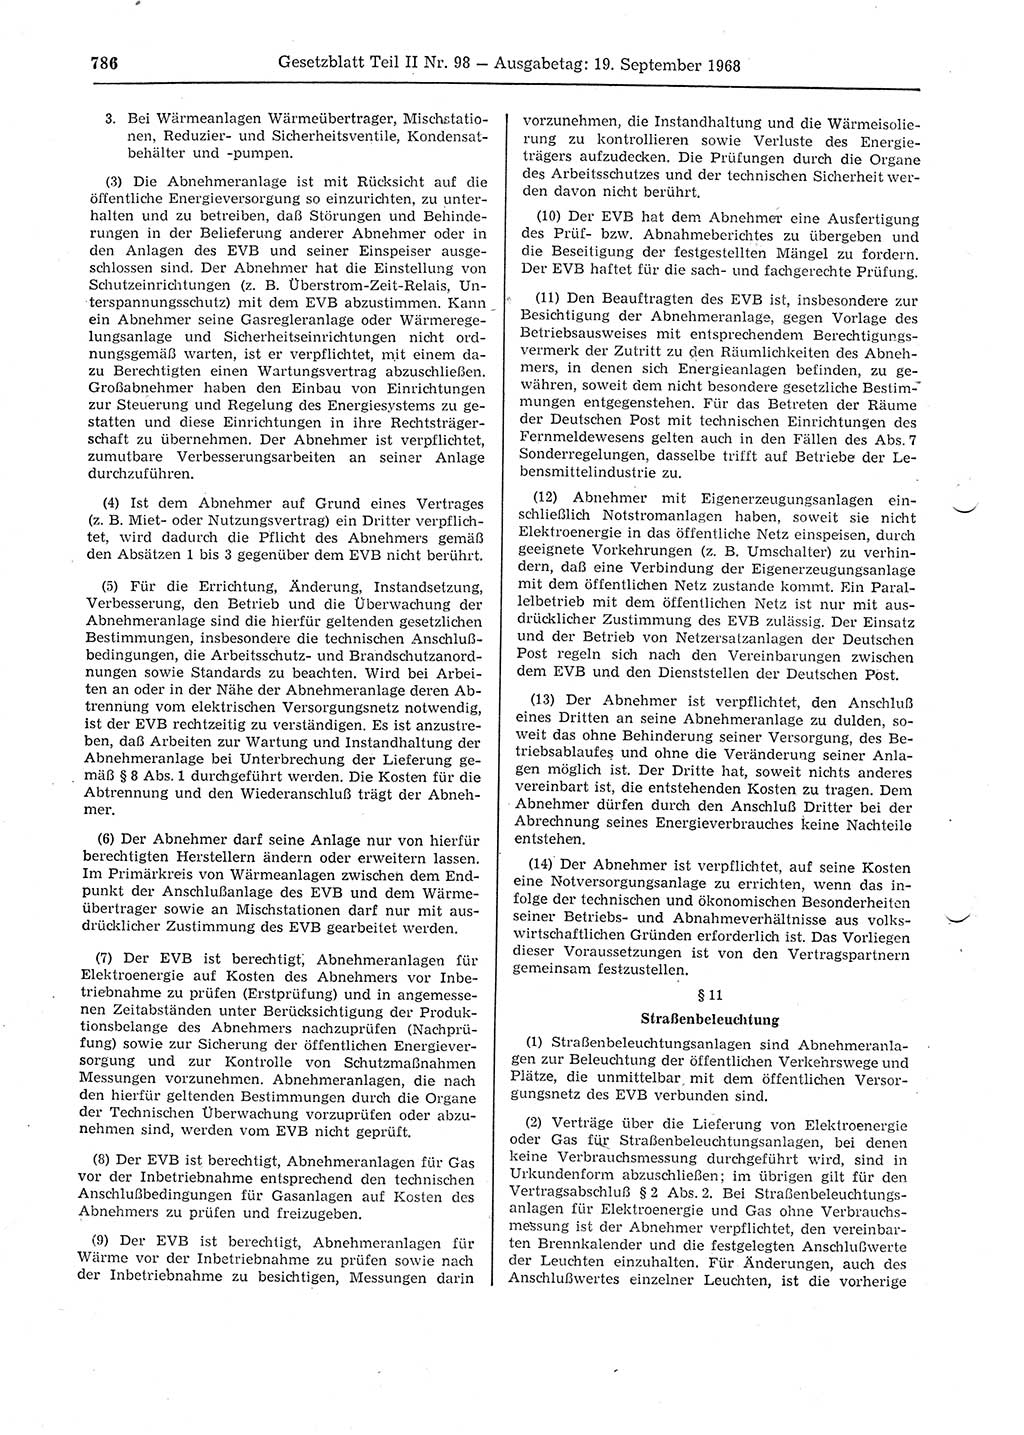 Gesetzblatt (GBl.) der Deutschen Demokratischen Republik (DDR) Teil ⅠⅠ 1968, Seite 786 (GBl. DDR ⅠⅠ 1968, S. 786)